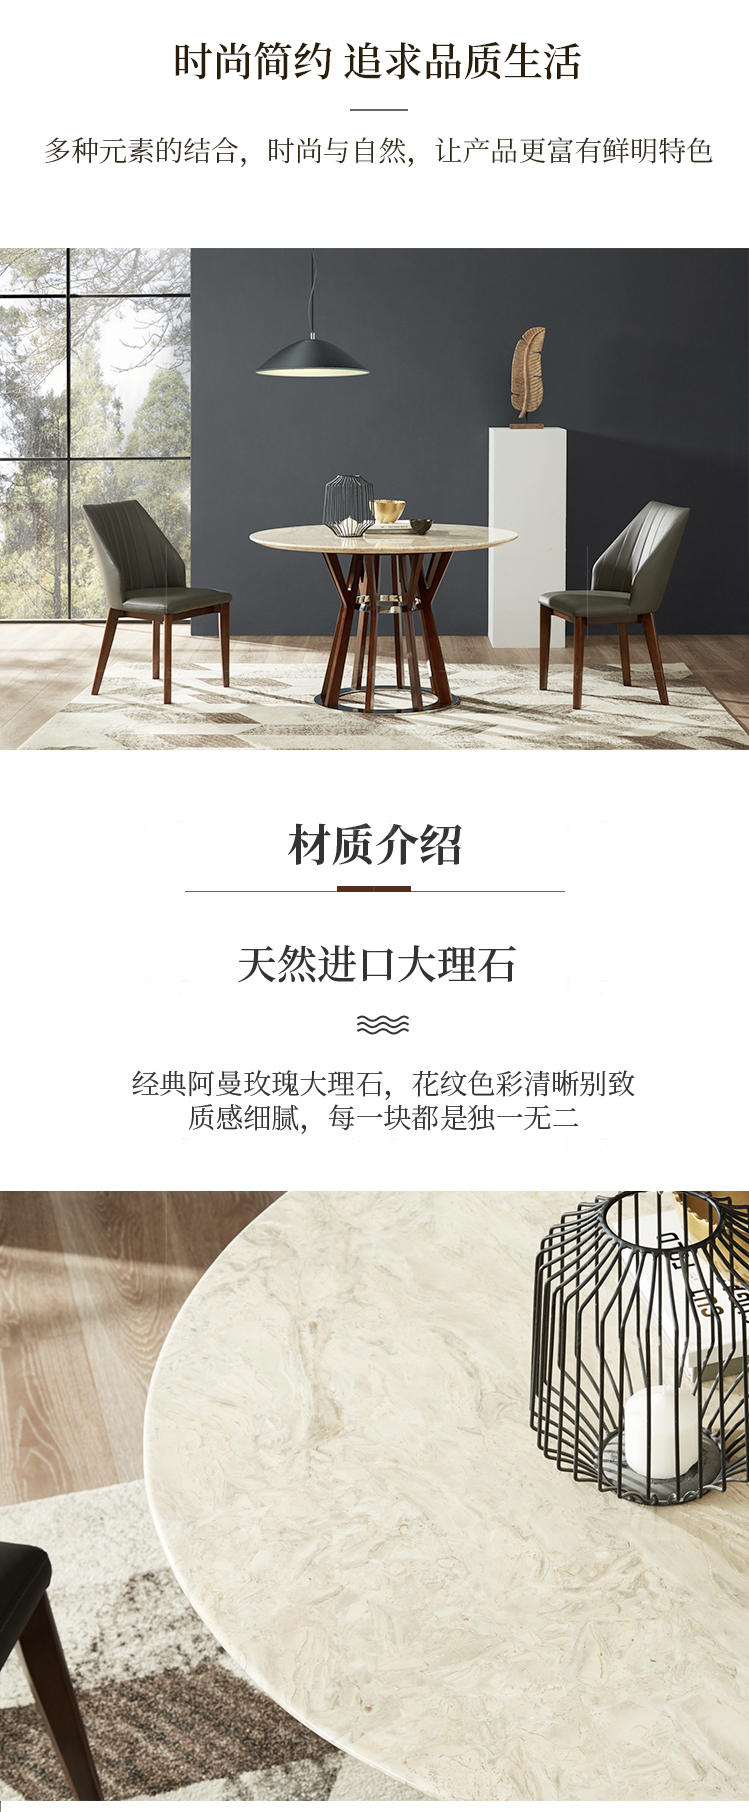 现代简约风格波恩圆餐桌的家具详细介绍